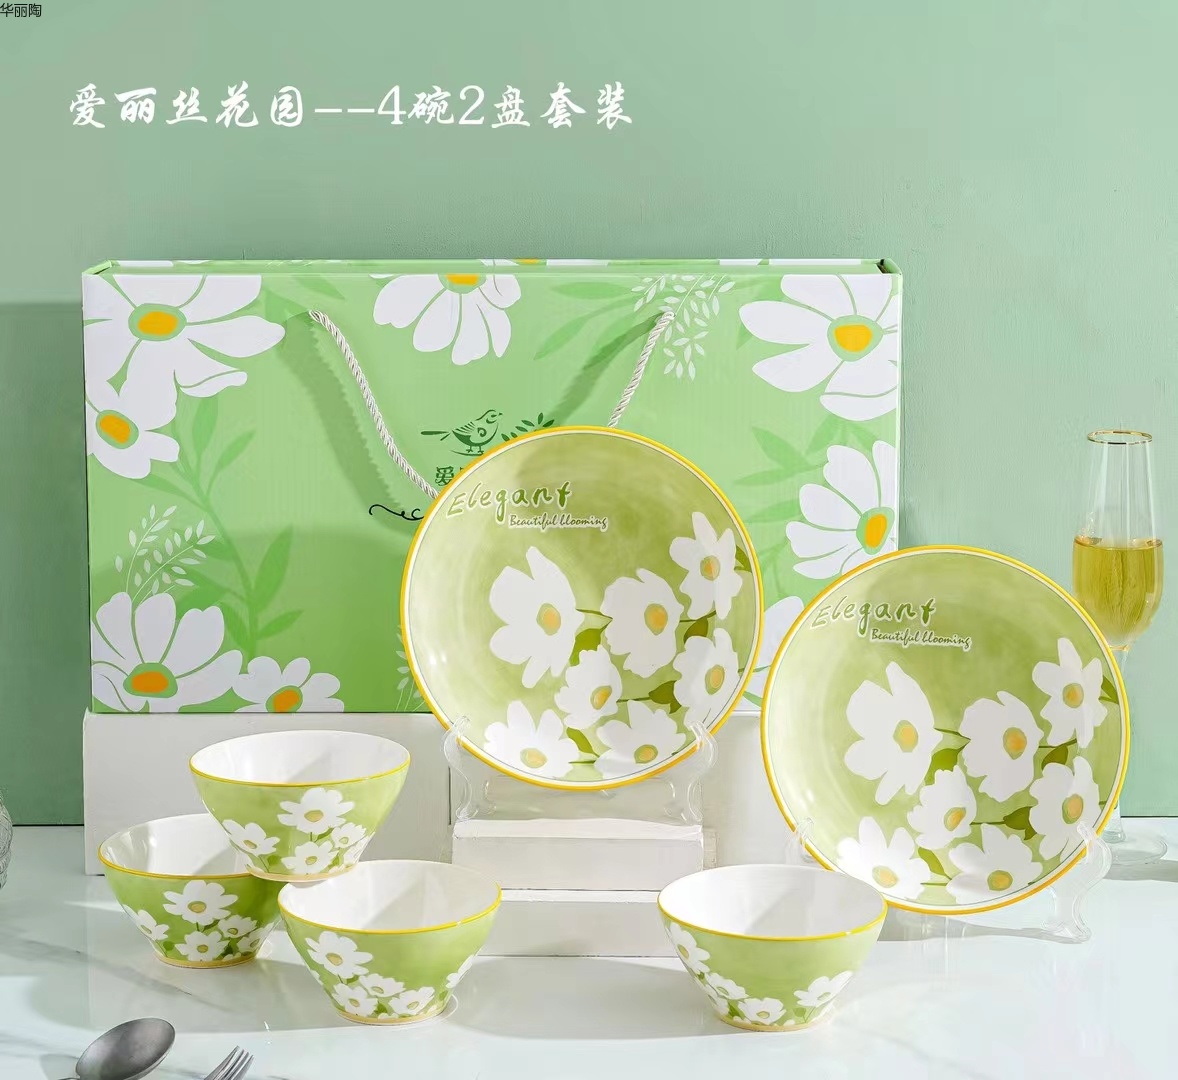 日式餐具日式碗陶瓷碗创意礼品陶瓷餐具礼品碗陶瓷碗盘中式餐具西式餐具详情33